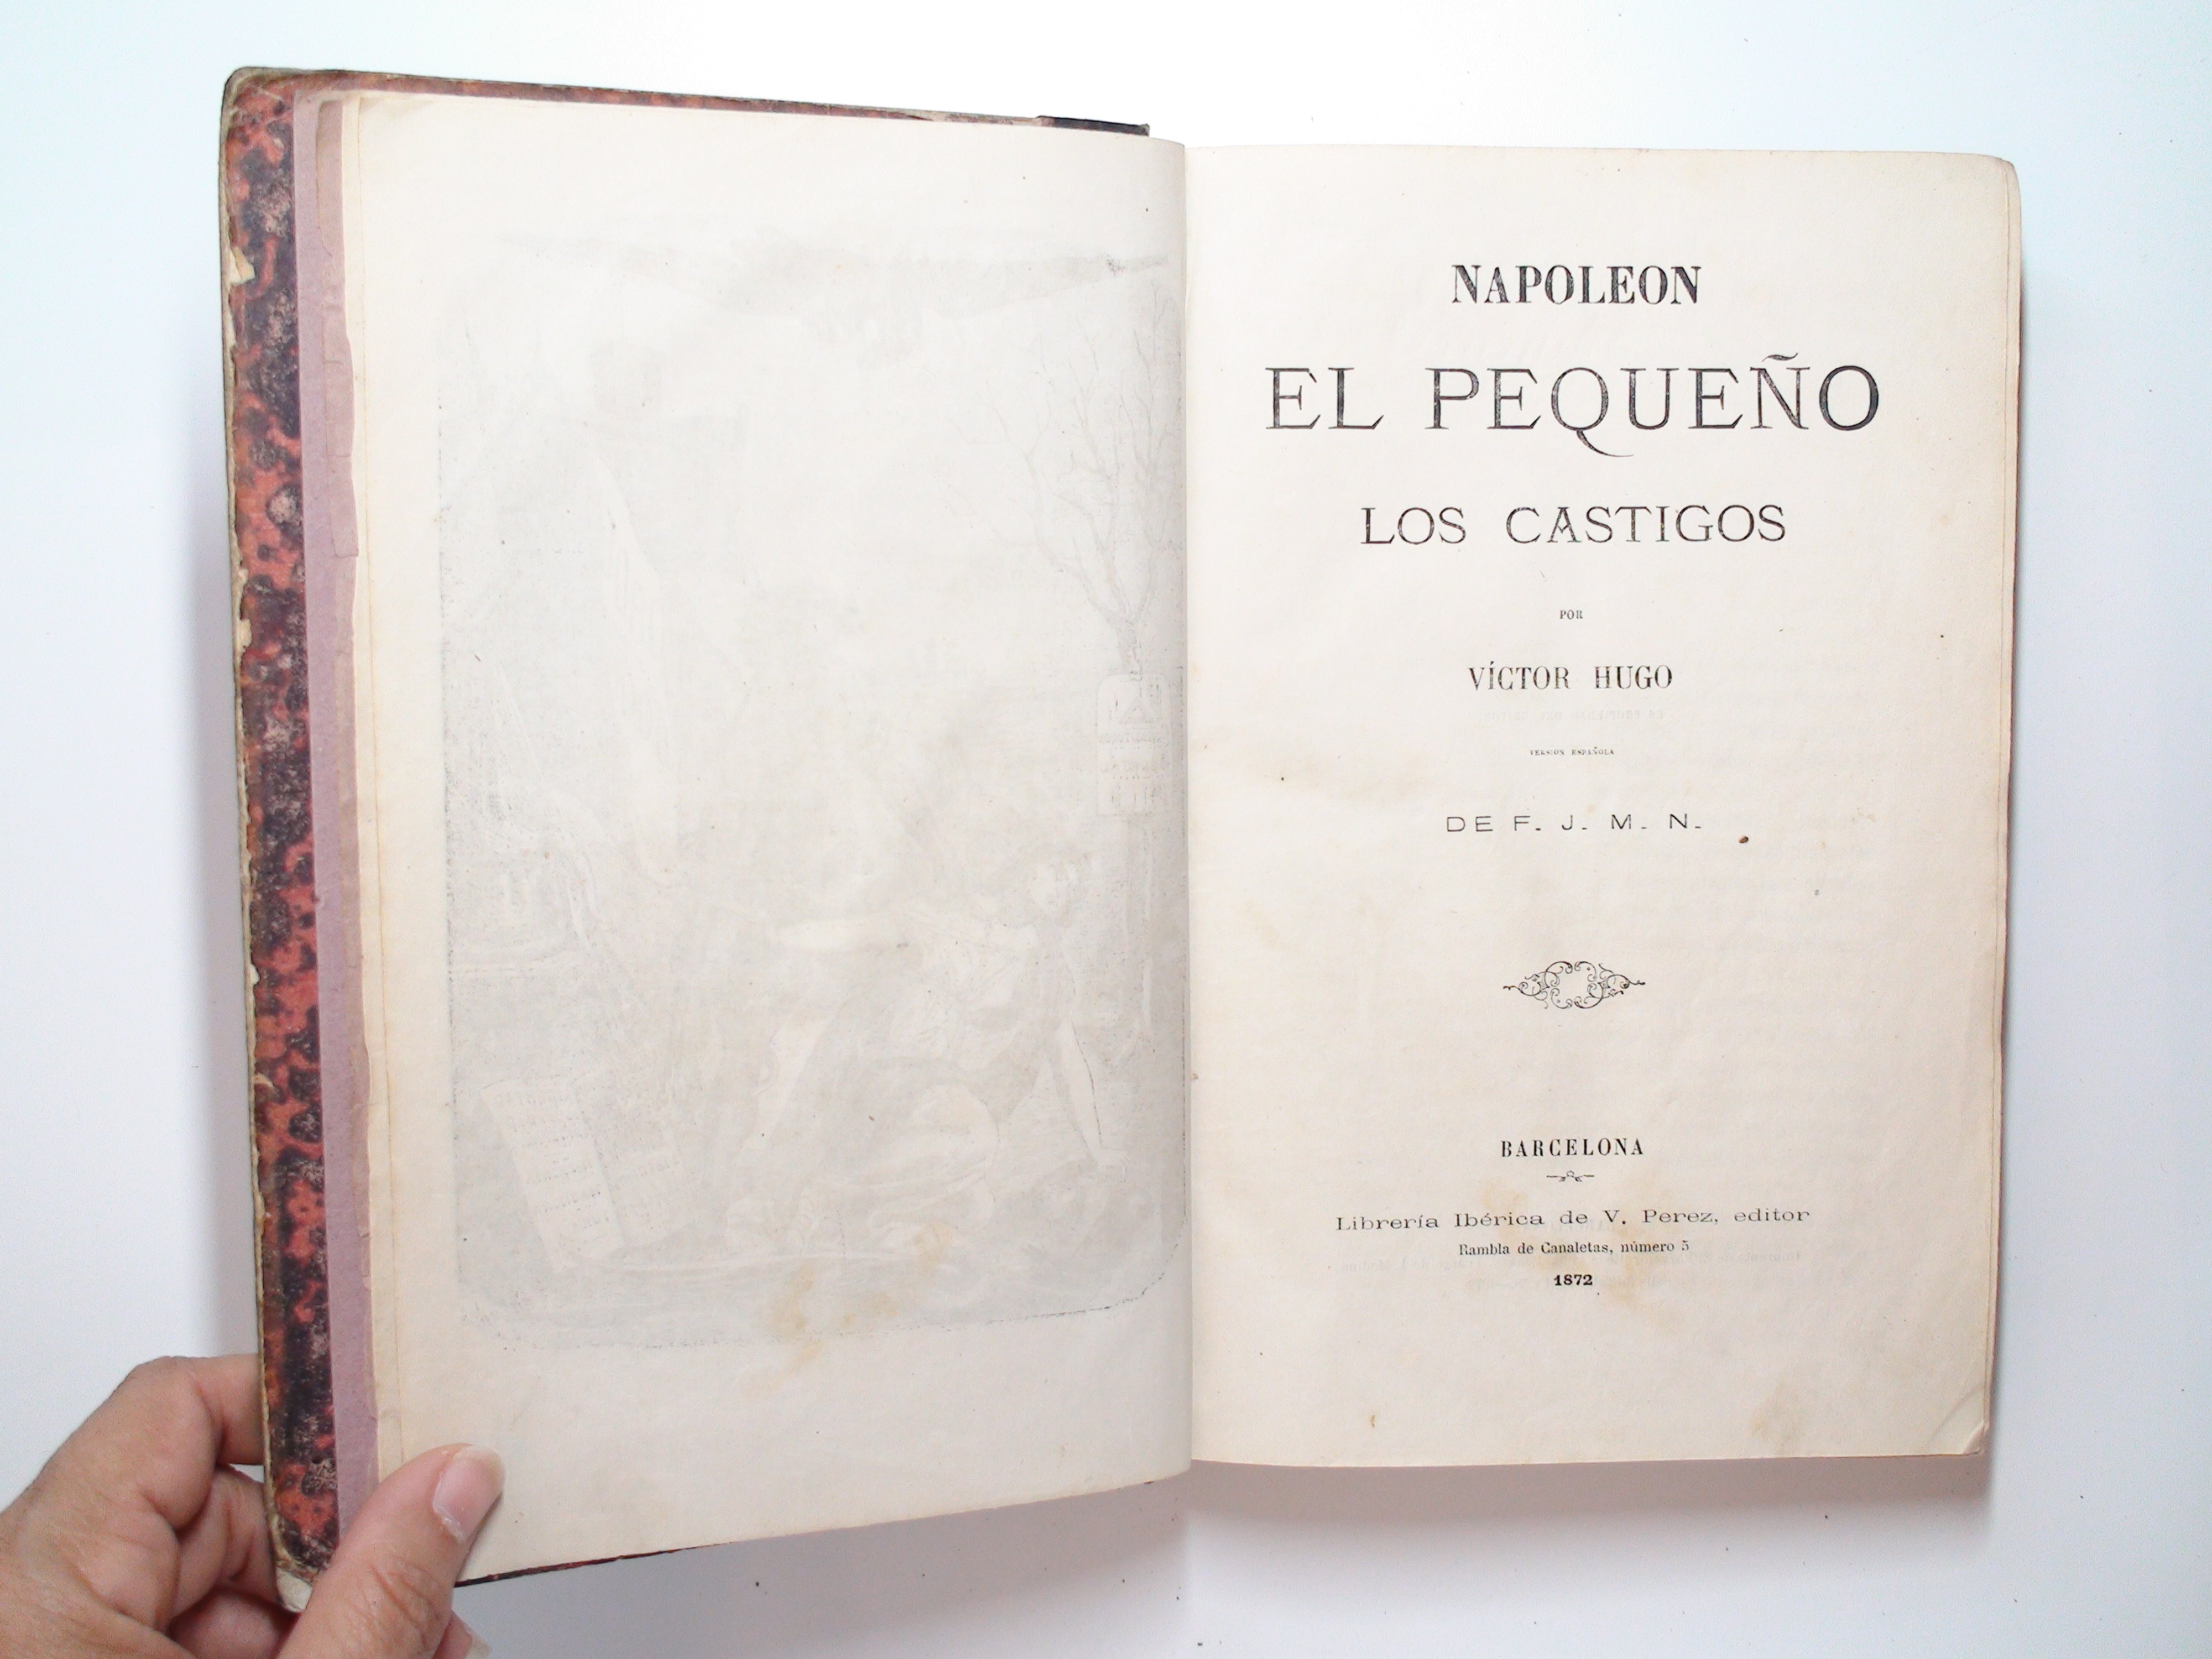 Napoleon El Pequeño, Los Castigos, Victor Hugo, Spanish Language, Rare, 1872